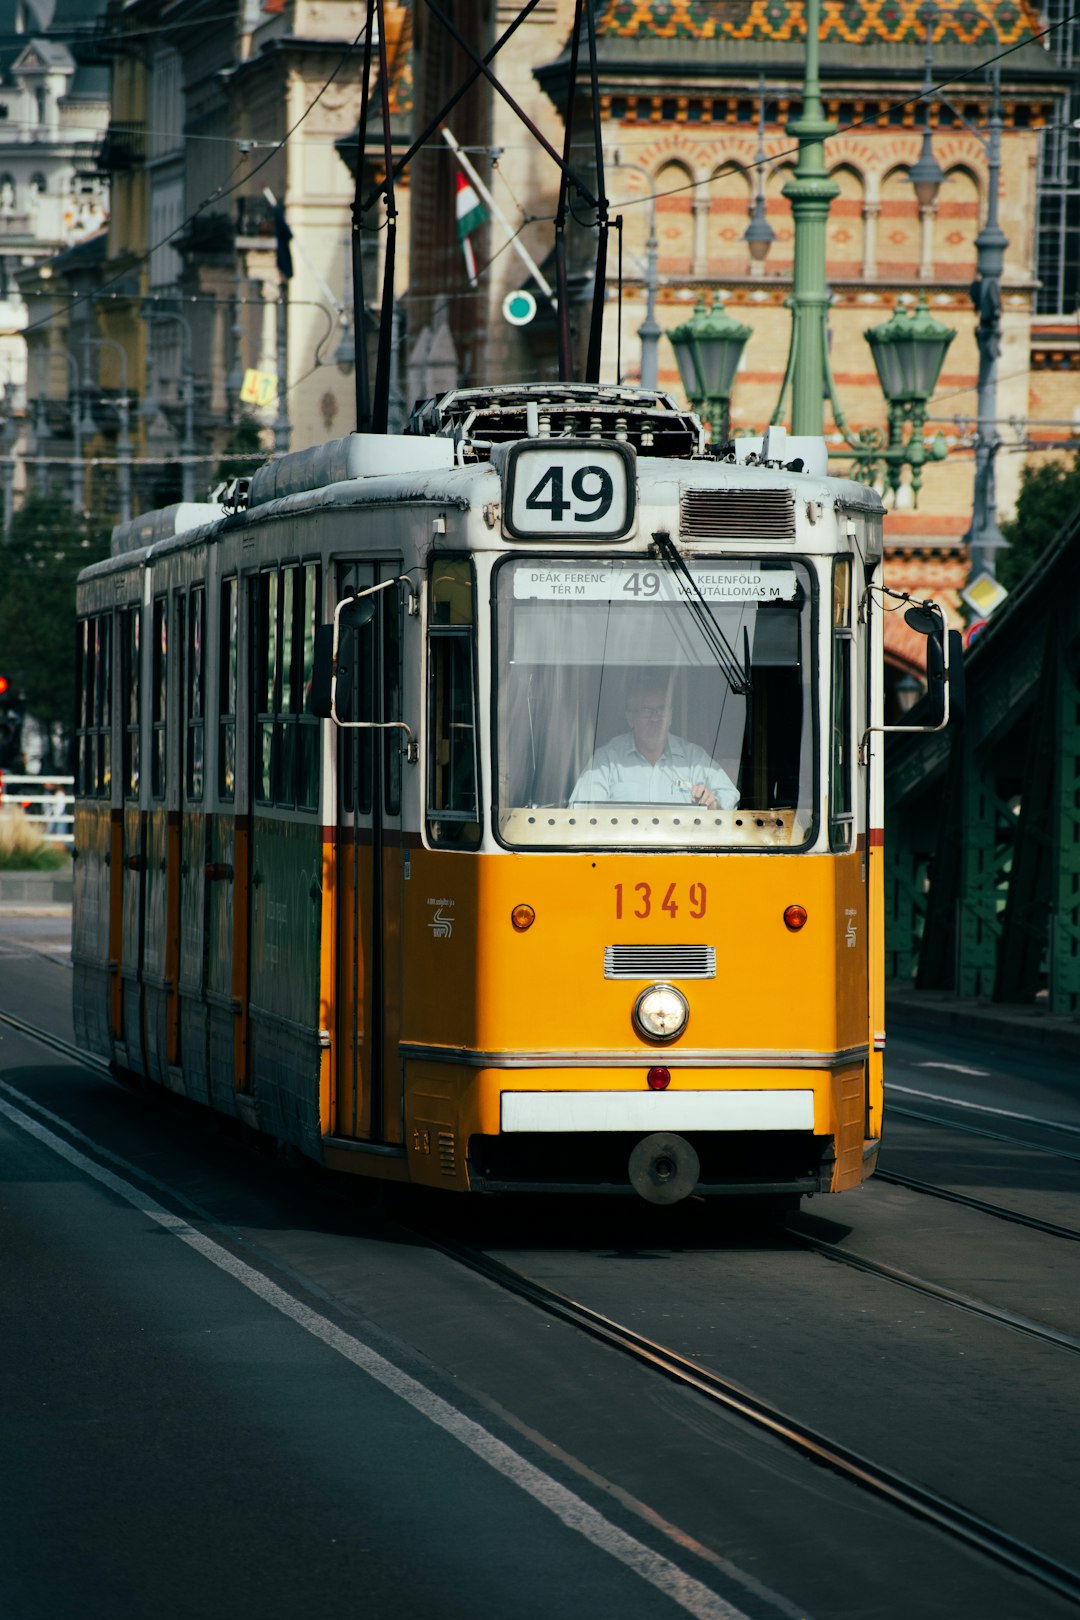 a trolley on a street